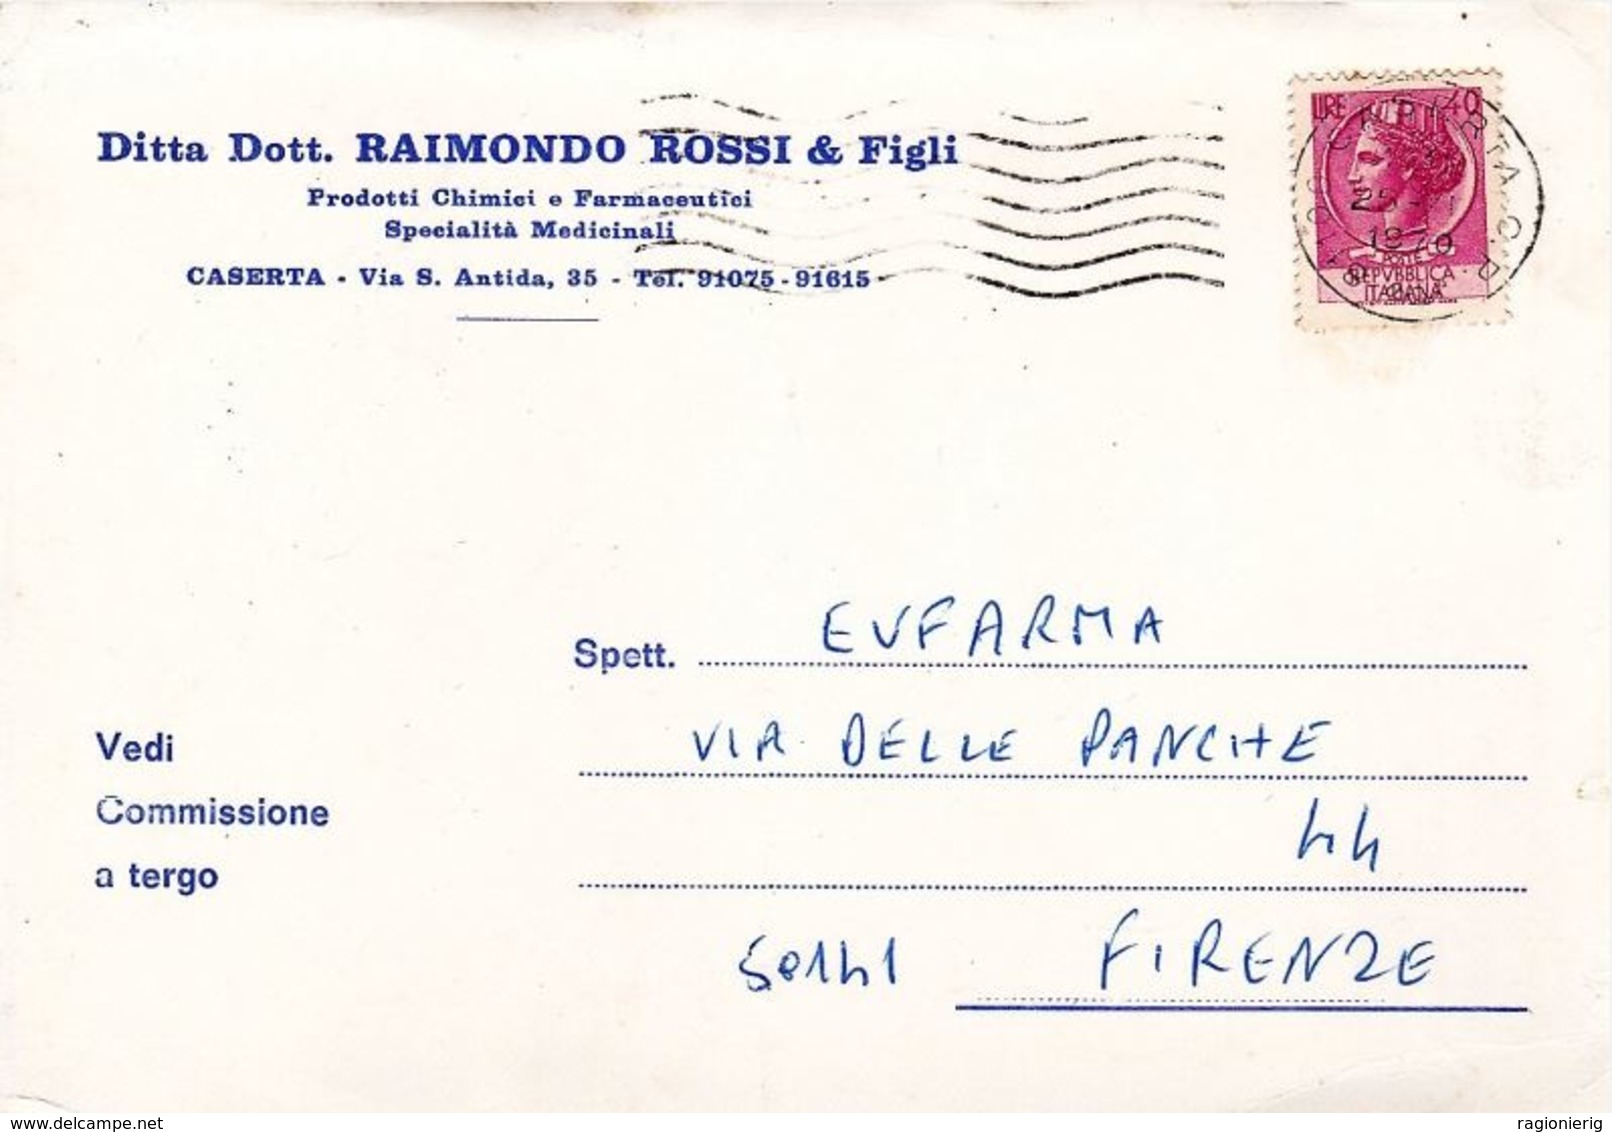 CASERTA - Cartolina Commerciale Ditta Dott.Raimondo Rossi & Figli - Via S.Antida - 1970 - Aversa